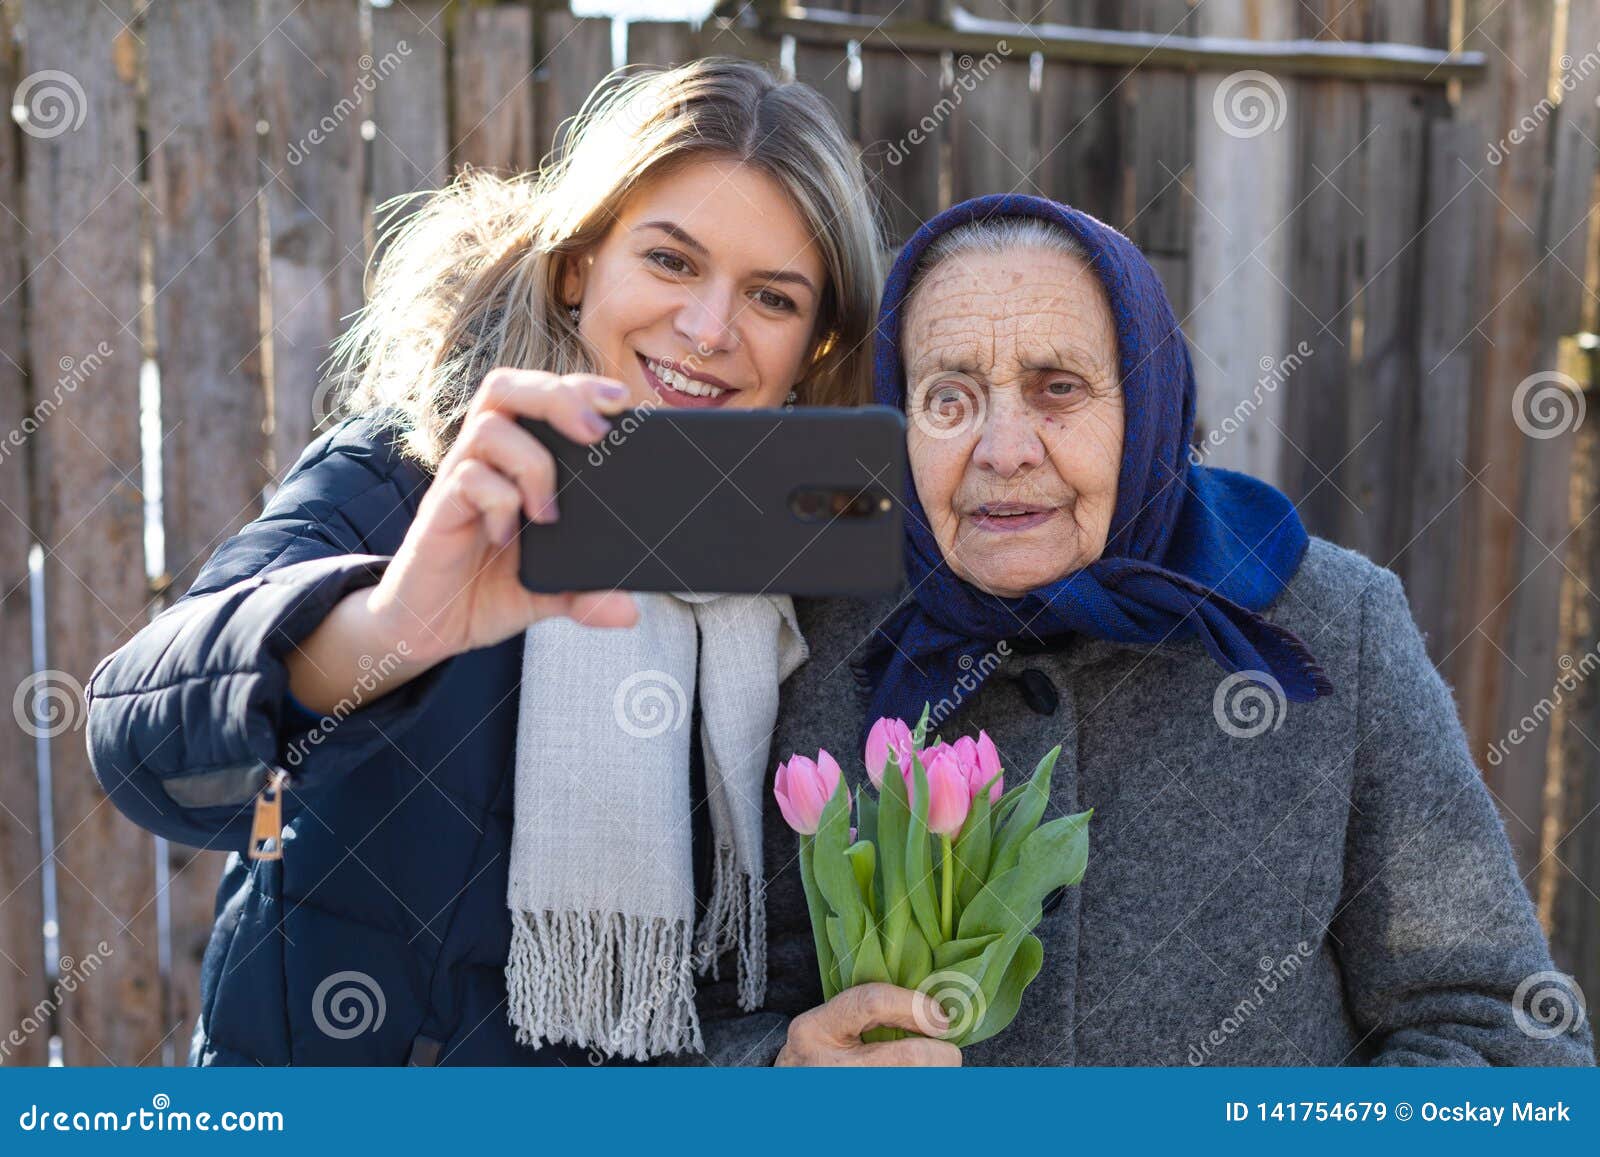 average older mature selfie